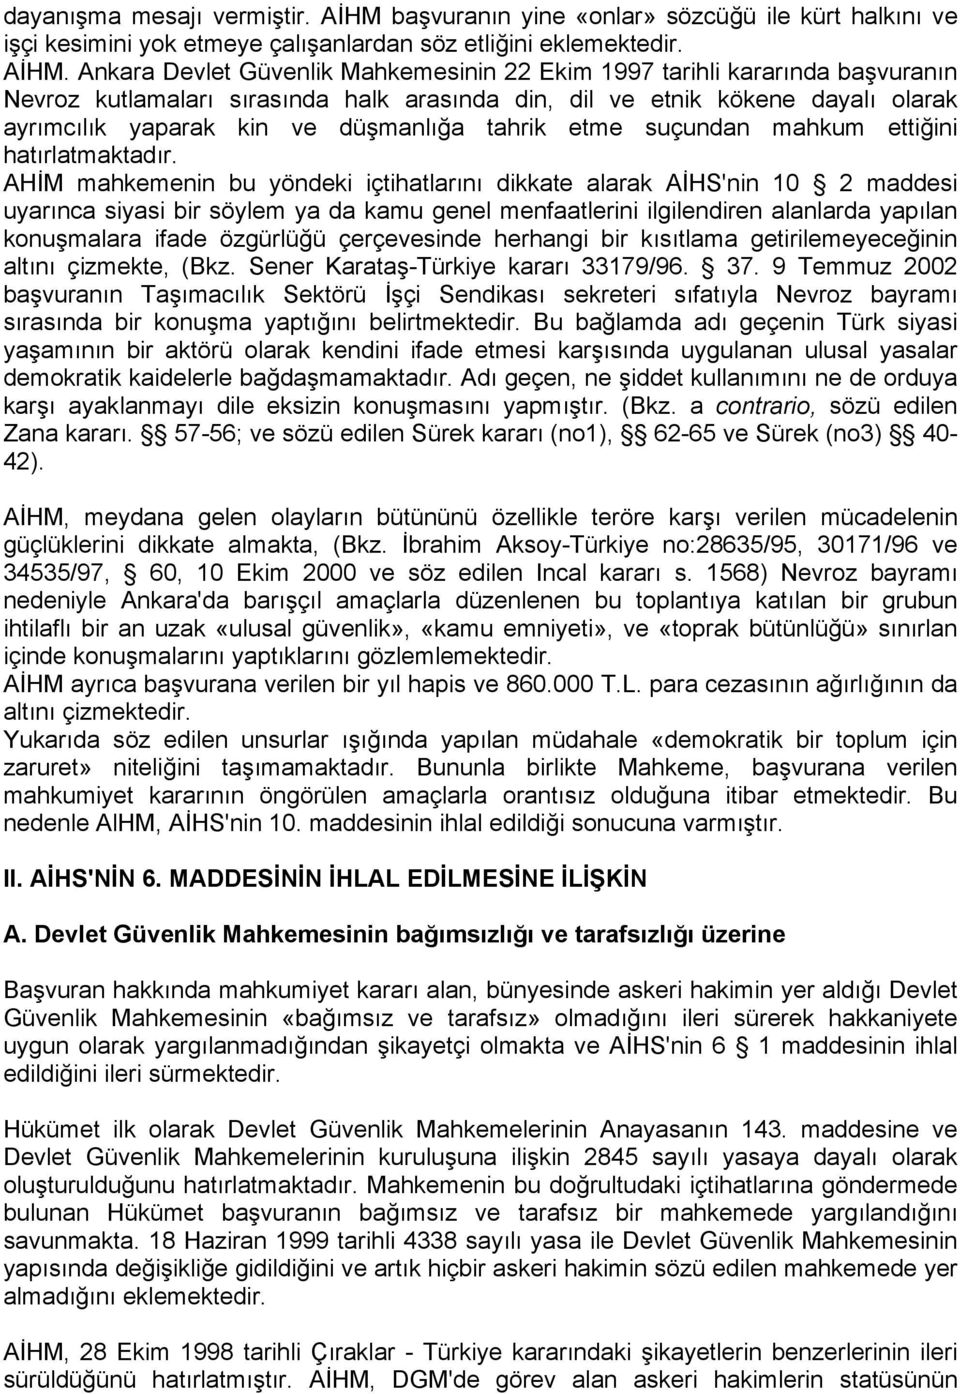 Ankara Devlet Güvenlik Mahkemesinin 22 Ekim 1997 tarihli kararında başvuranın Nevroz kutlamaları sırasında halk arasında din, dil ve etnik kökene dayalı olarak ayrımcılık yaparak kin ve düşmanlığa